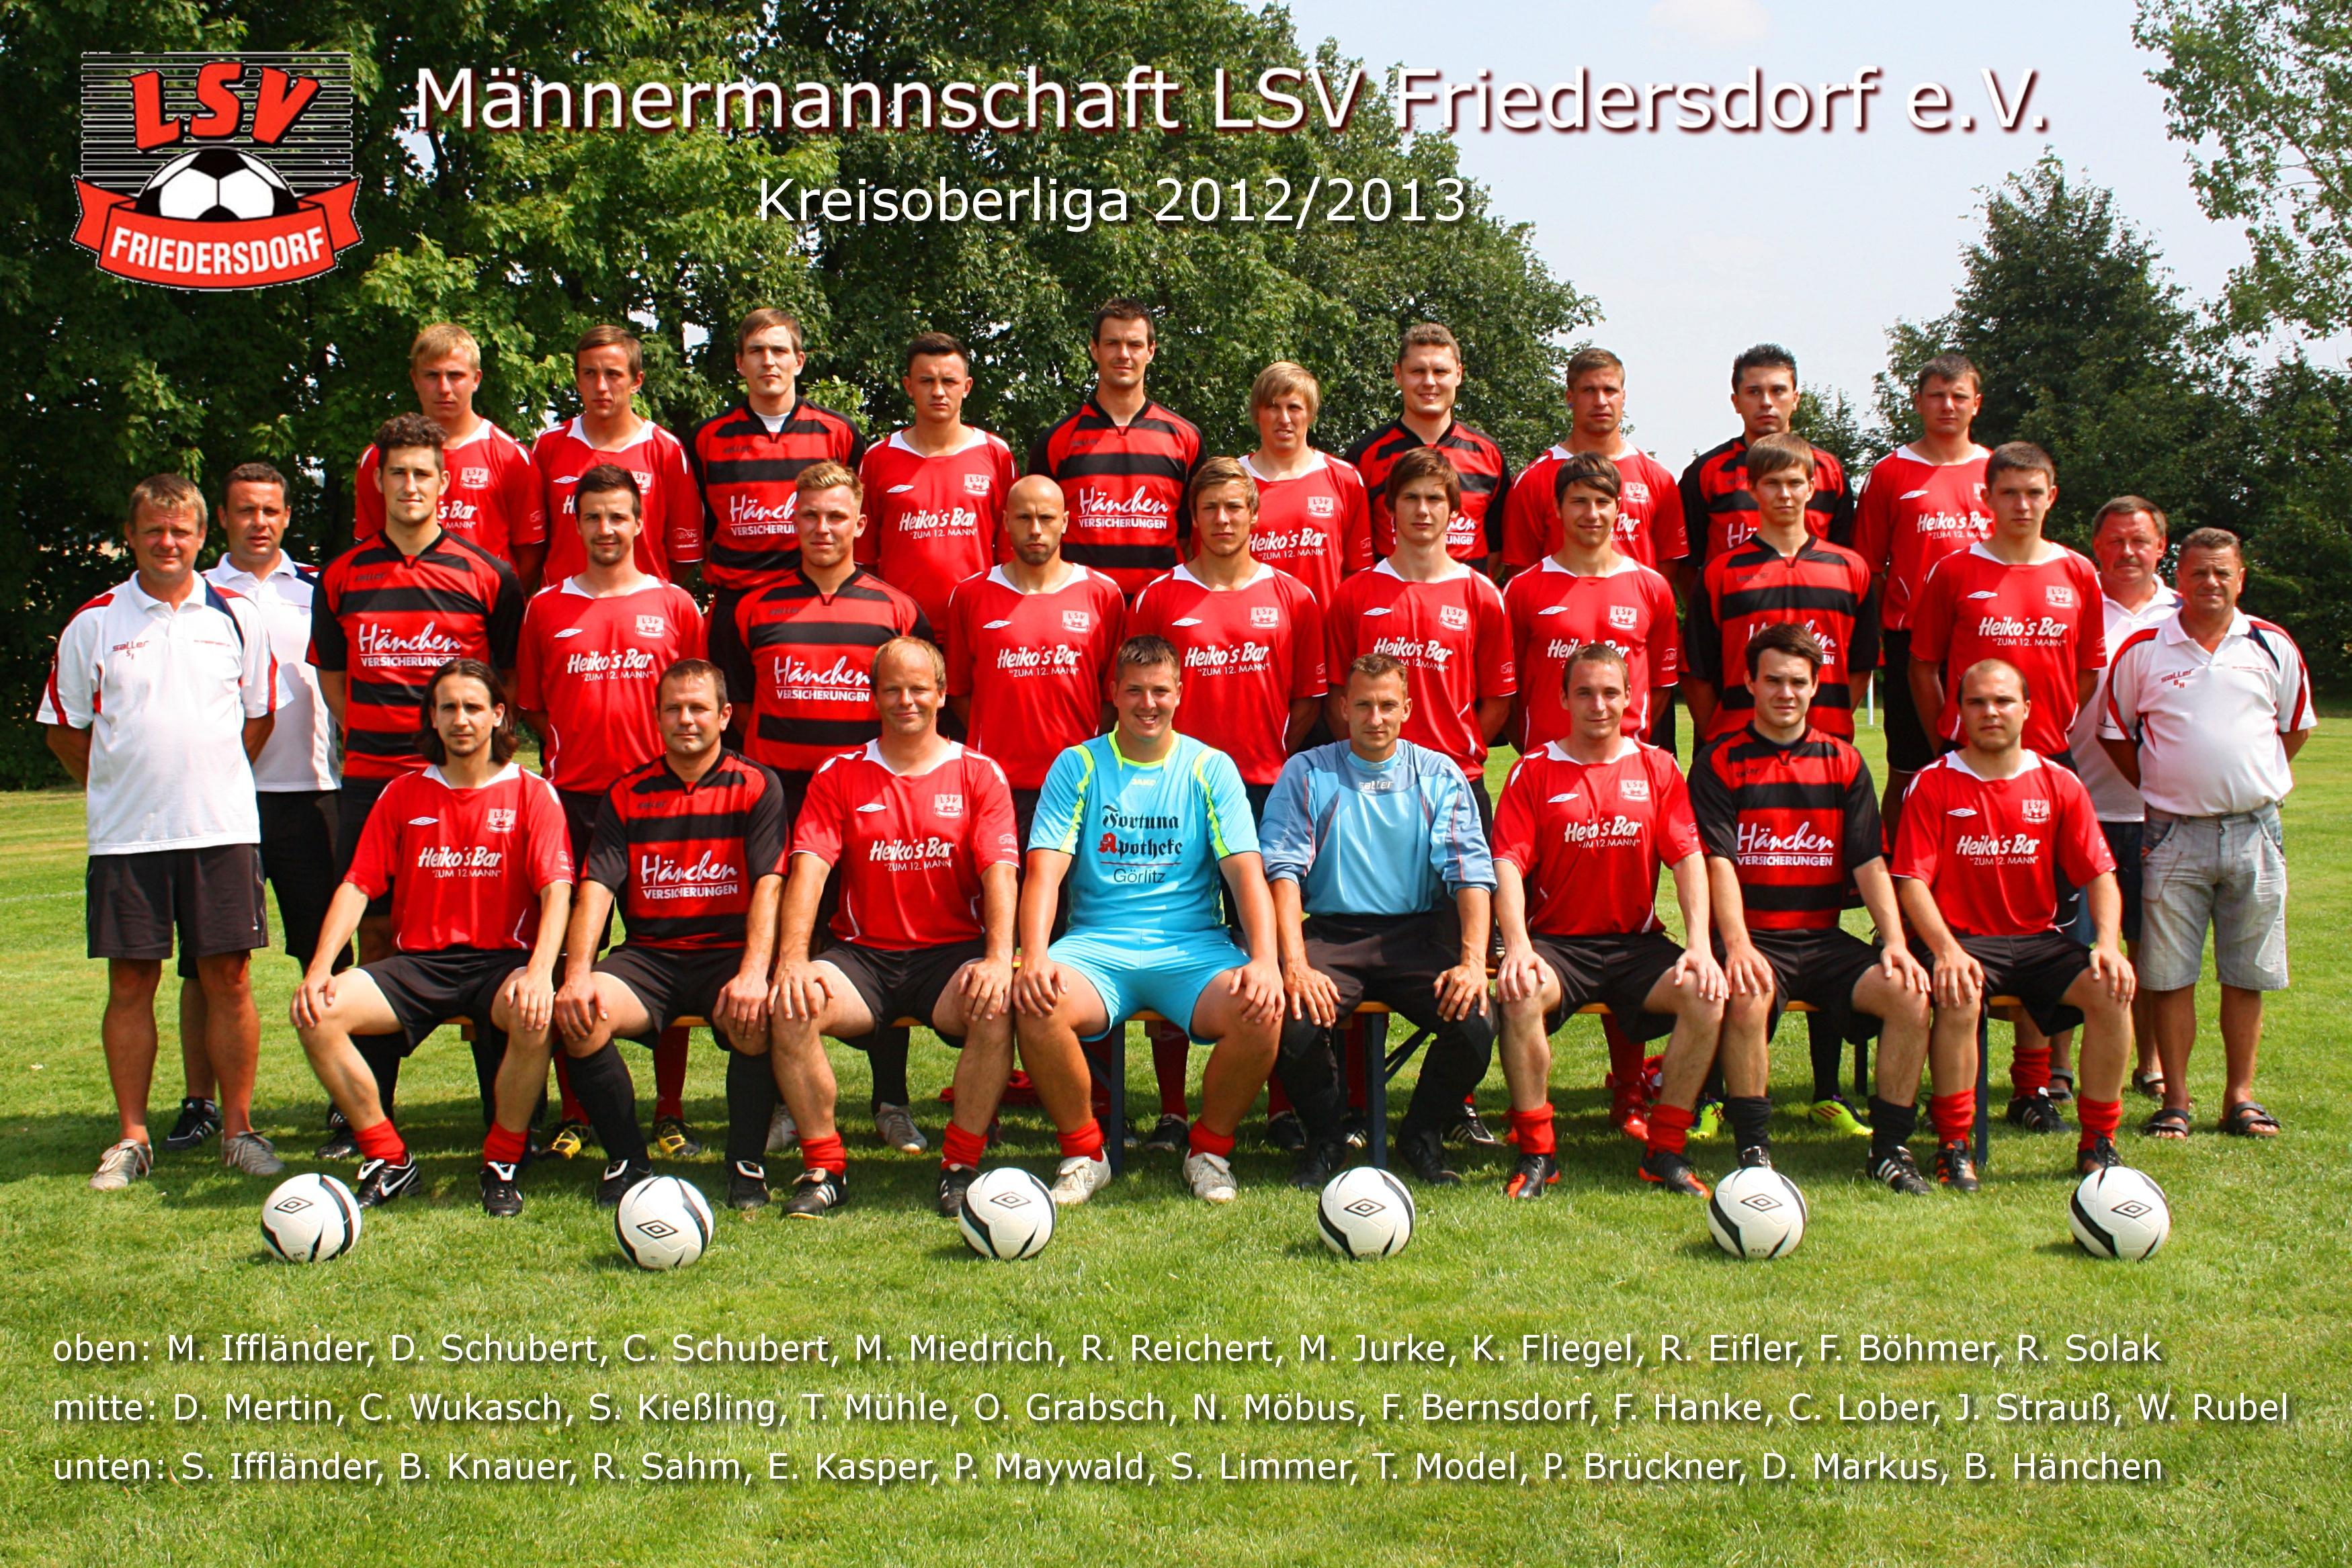 Mannschaftsfoto/Teamfoto von LSV Friedersdorf